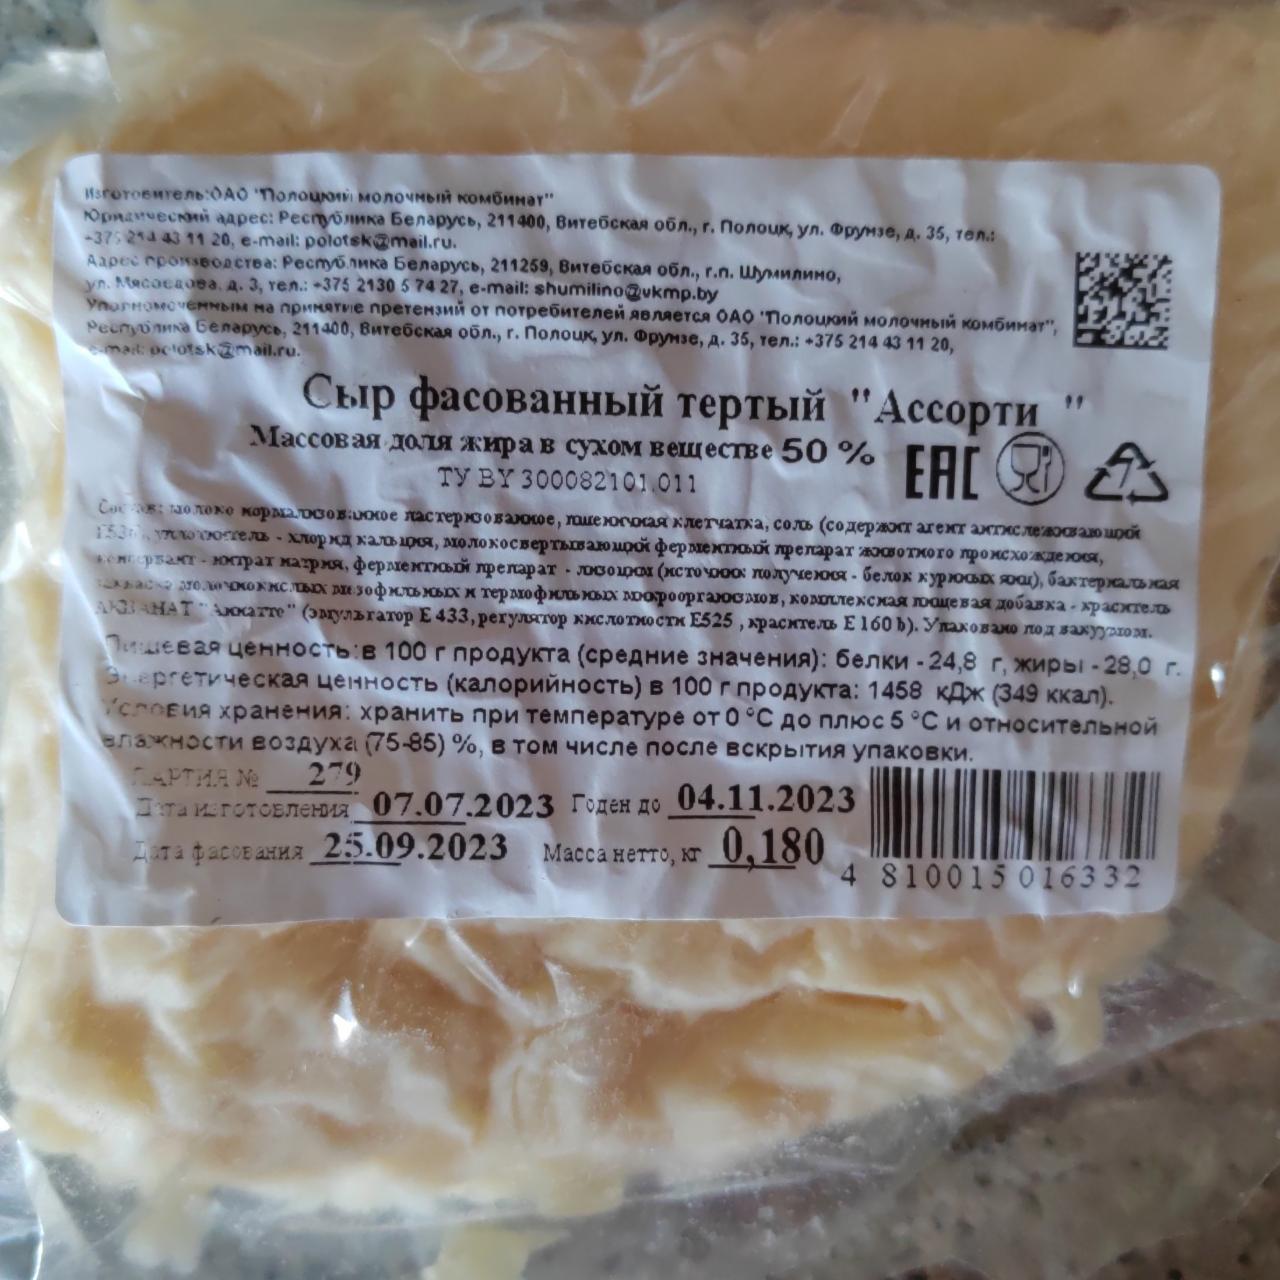 Фото - Сыр ыасованный тёртый Ассорти Полоцкий молочный комбинат